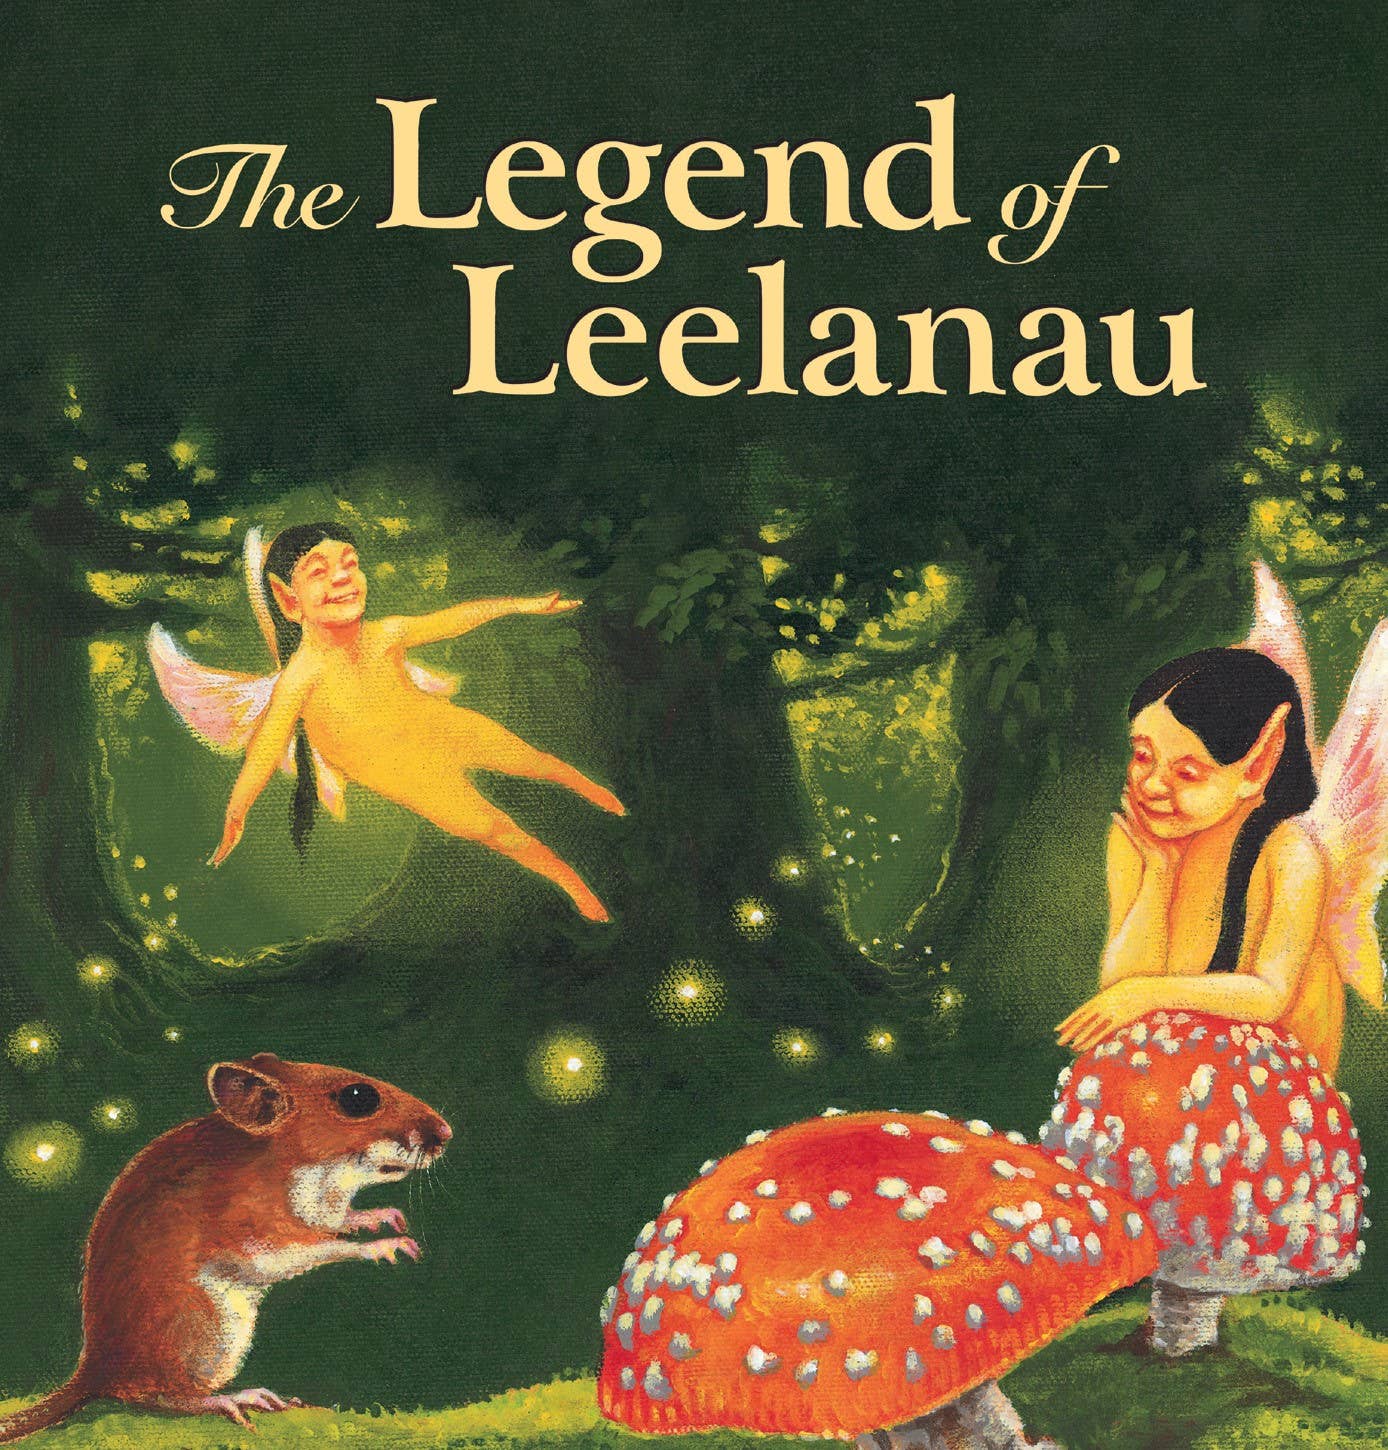 The Legend of Leelanau